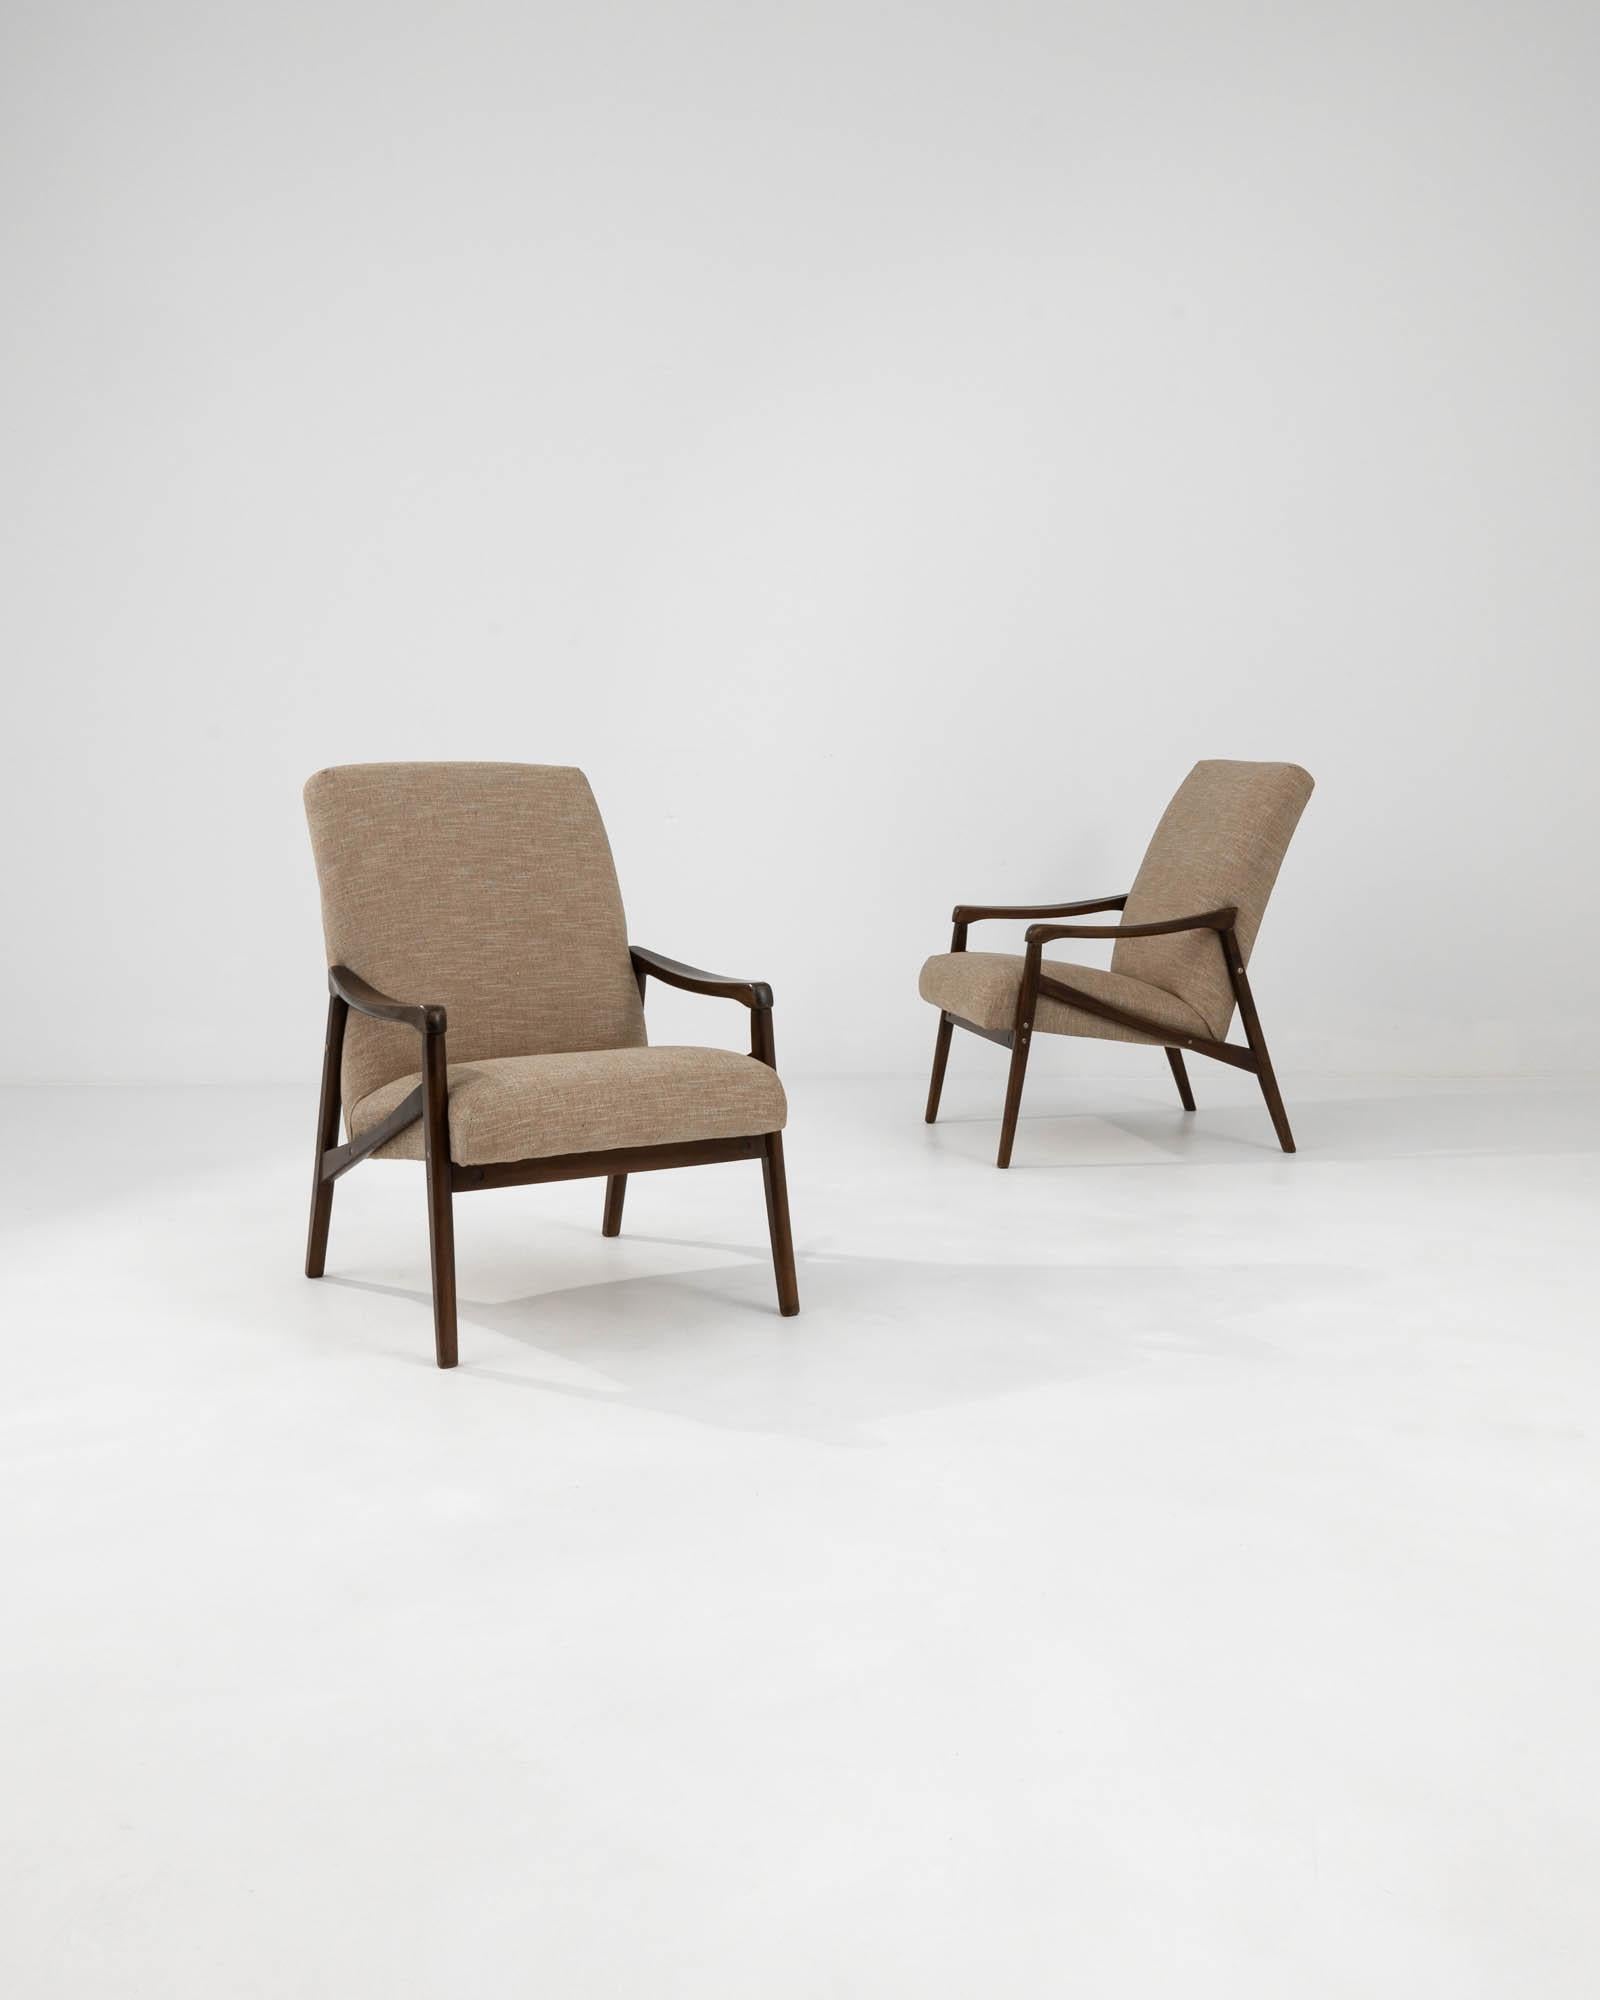 Voici les fauteuils tapissés tchèques des années 1960 de Jiri Jiroutek, une paire qui incarne l'esprit du design moderne du milieu du siècle avec un soupçon de charme de l'Europe de l'Est. Les lignes nettes et angulaires du cadre en bois foncé sont